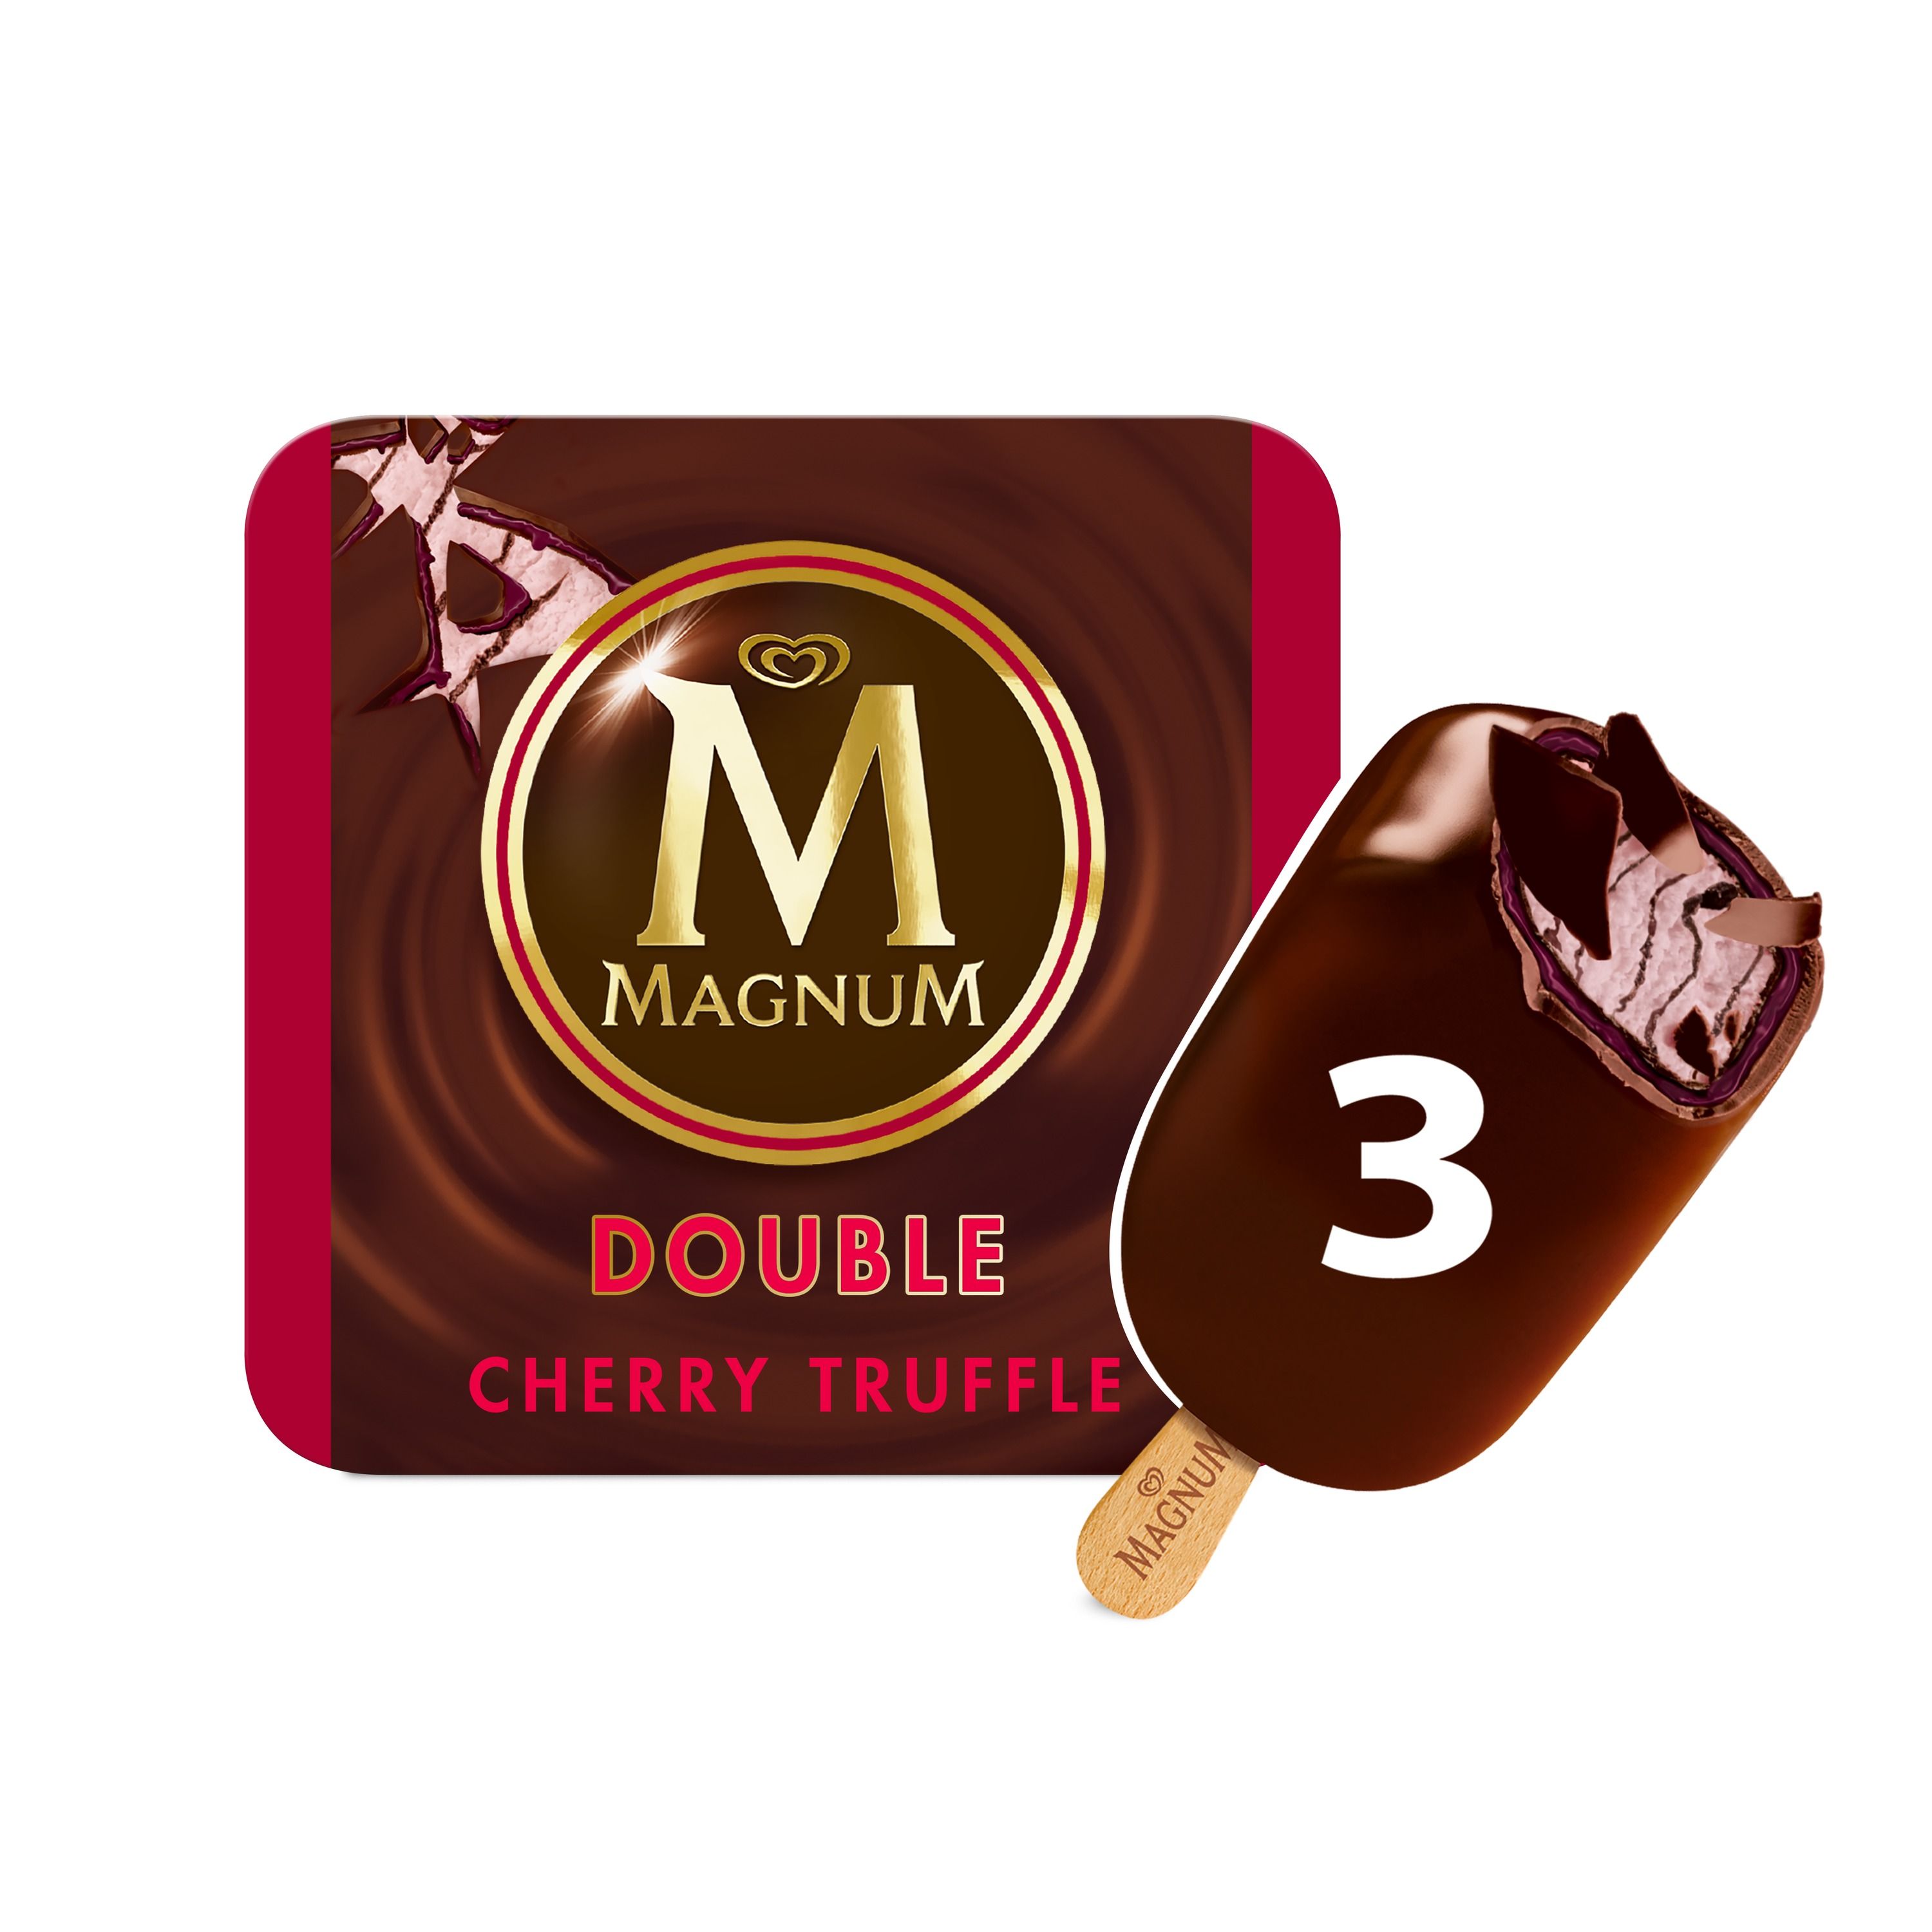 Magnum Ice Cream Double Cherry Truffle 3 ct - image 1 of 2